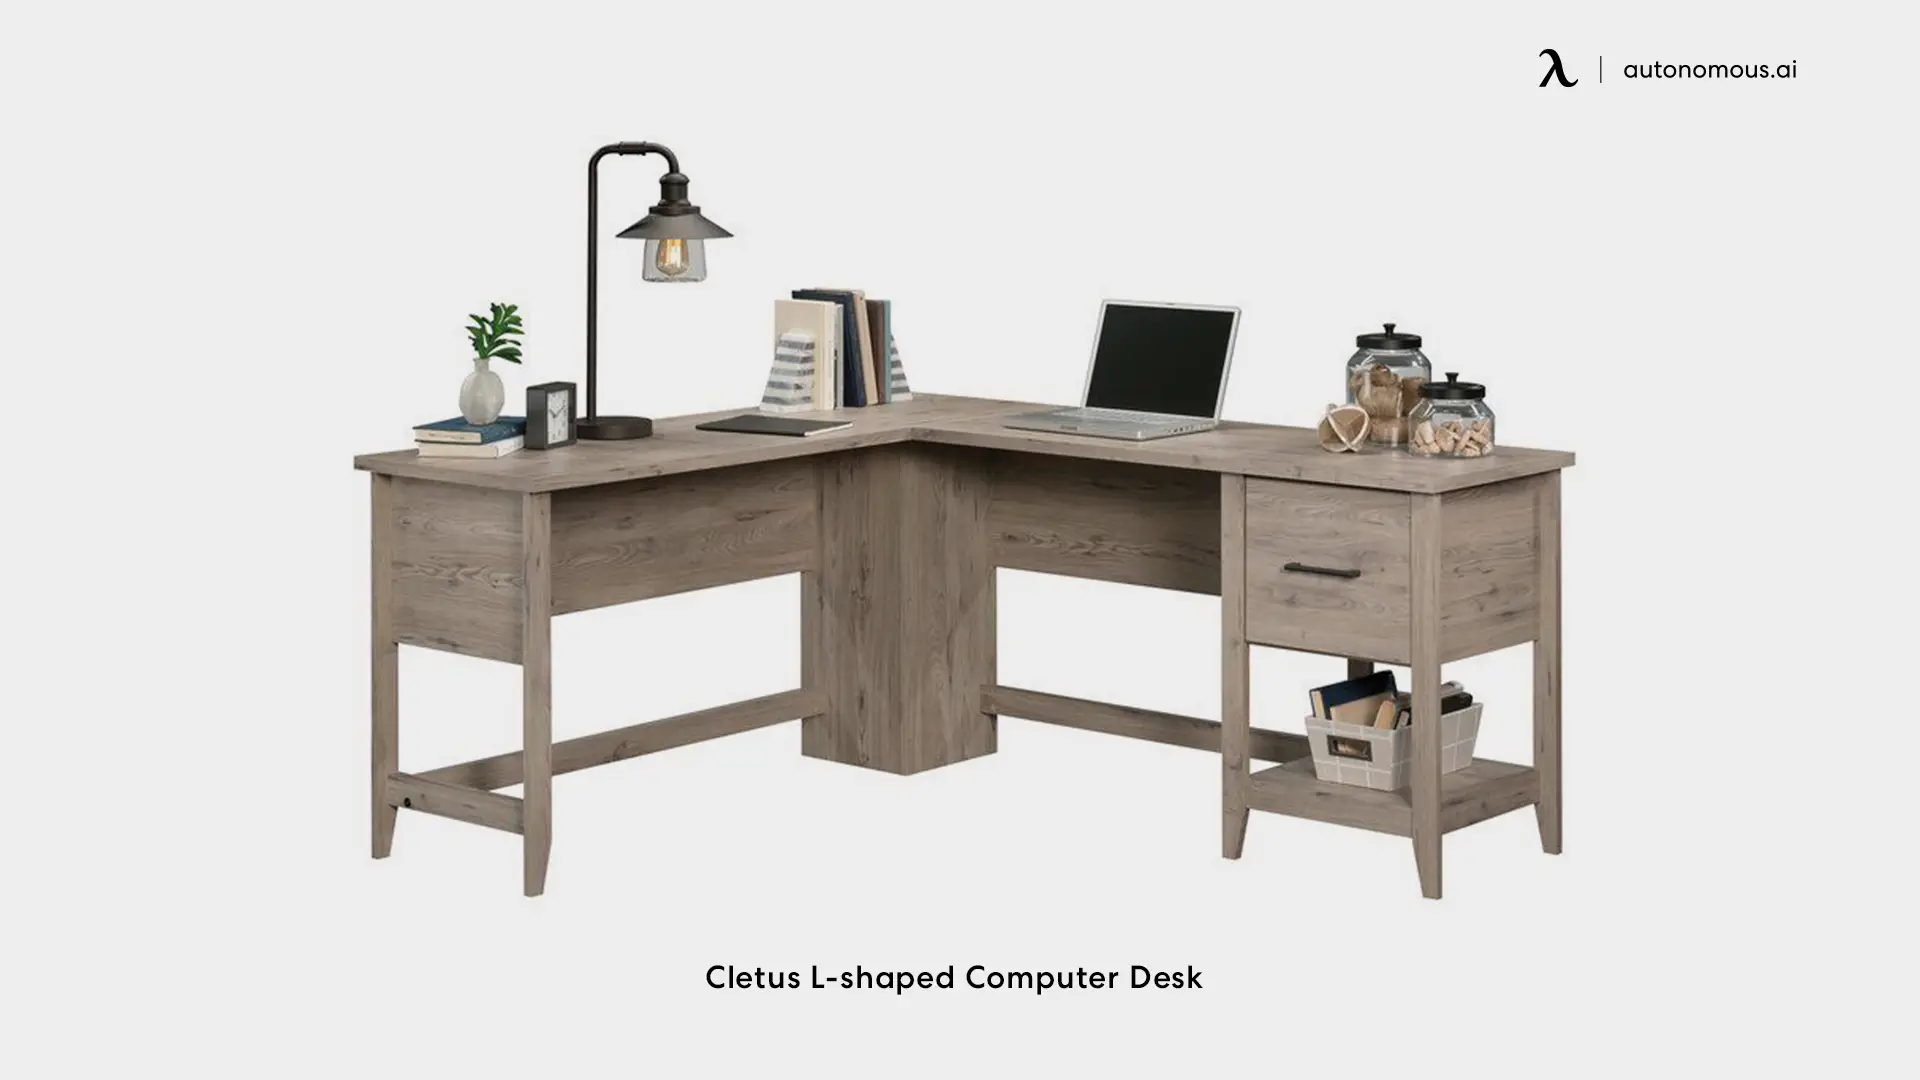 Cletus L-shaped Computer Desk